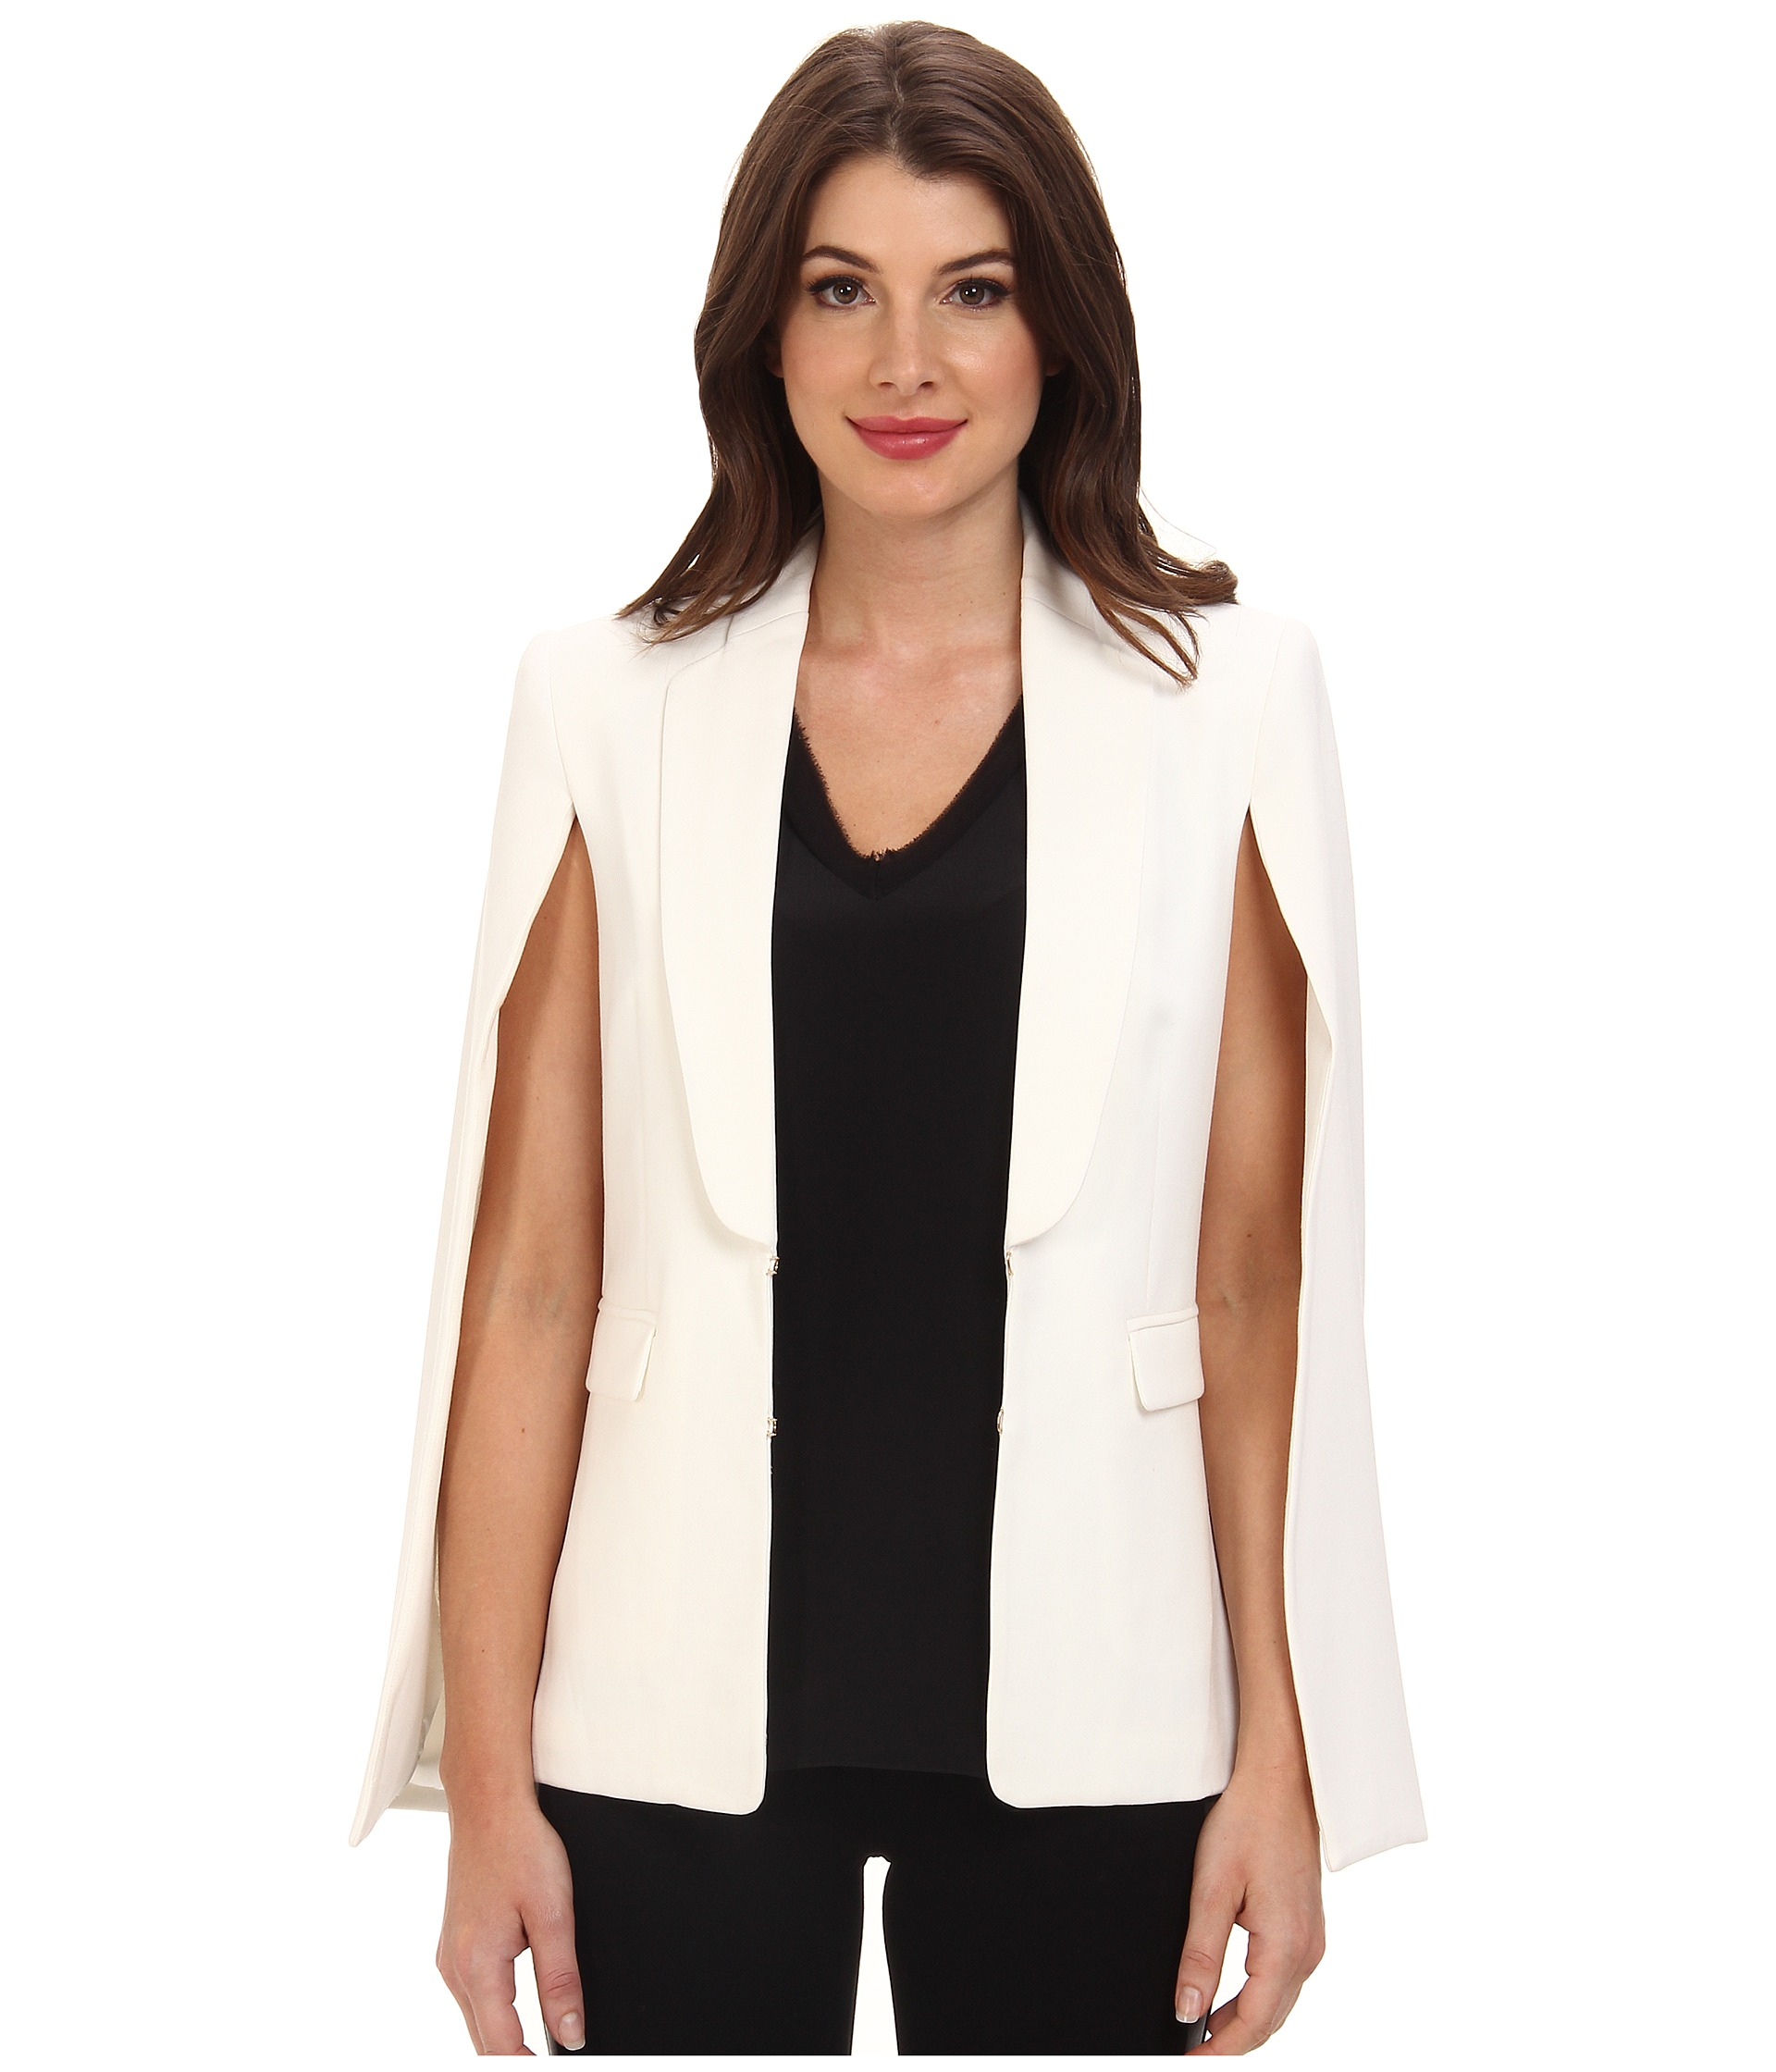 Reokoou Women Openwork Lace Flower Splicing Blazer Long Sleeve Jacket Office Wear Cardigan Coat Casual Slim Fit Blouse 